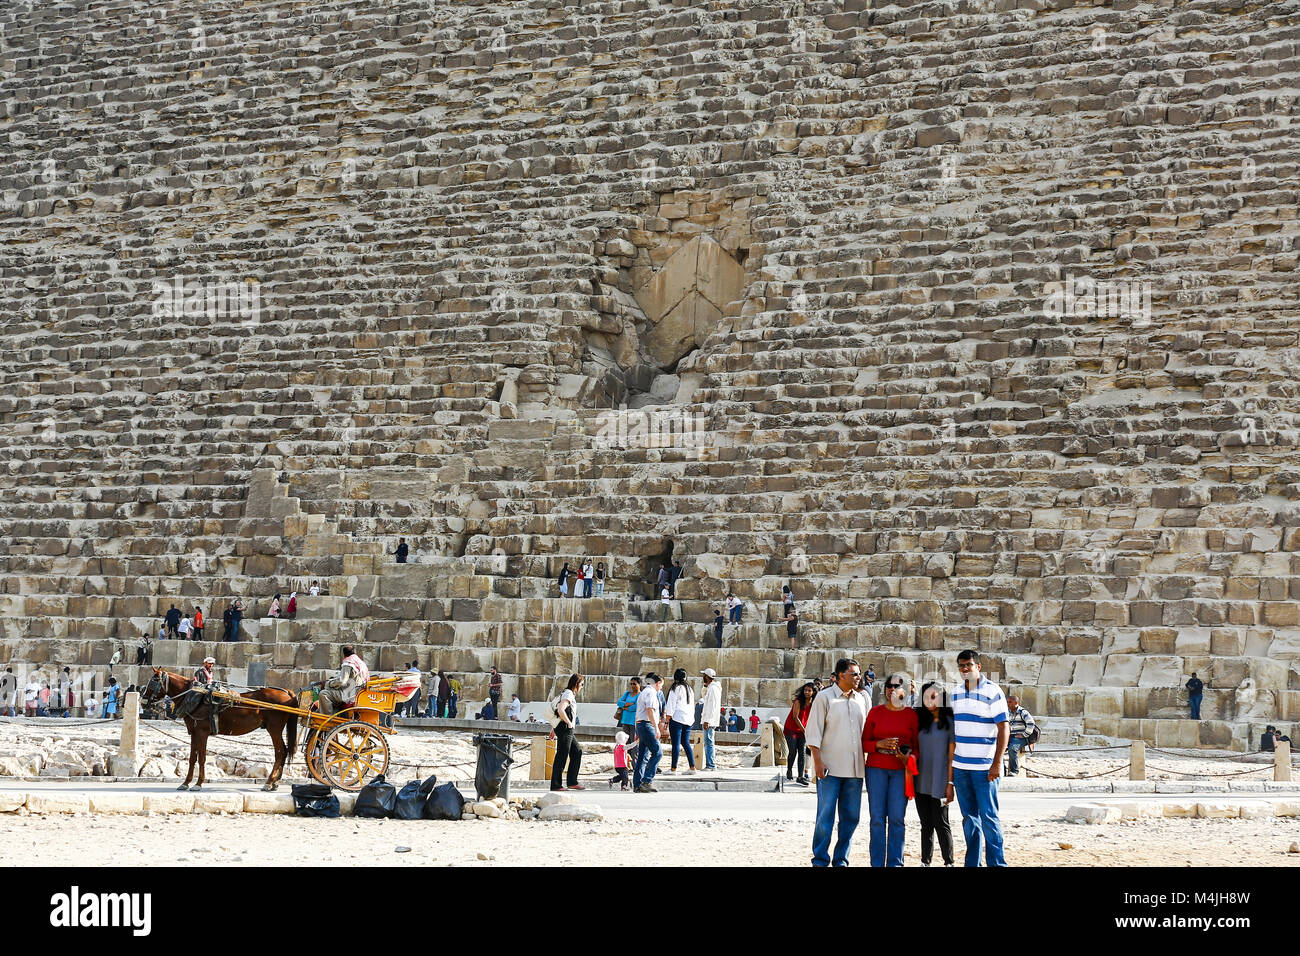 Les touristes à l'extérieur de l'entrée de la grande pyramide de Gizeh et la pyramide de Chéops, les Pyramides, Gizeh, Egypte, Afrique du Nord Banque D'Images